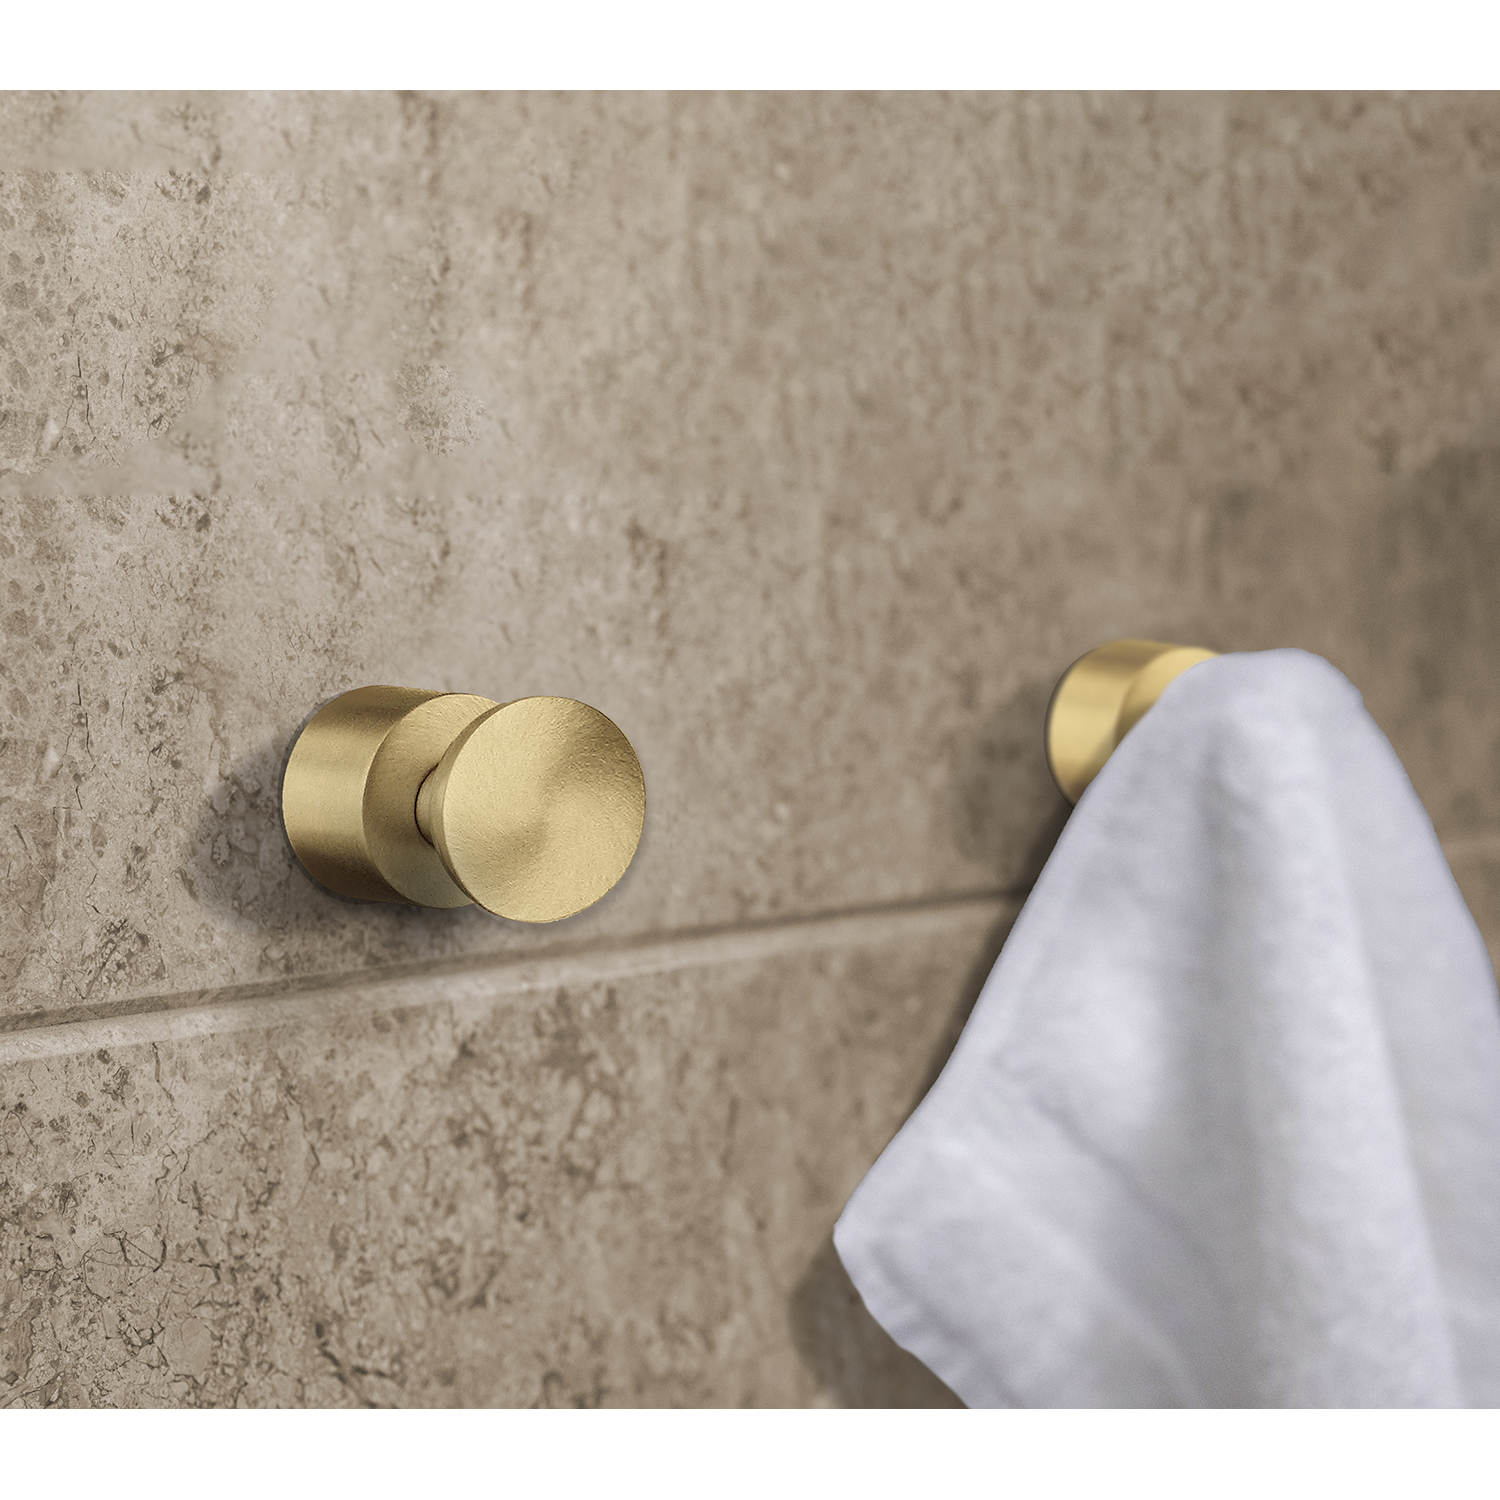 Smedbo Home Series Accesorios de baño Toallero doble de latón cepillado